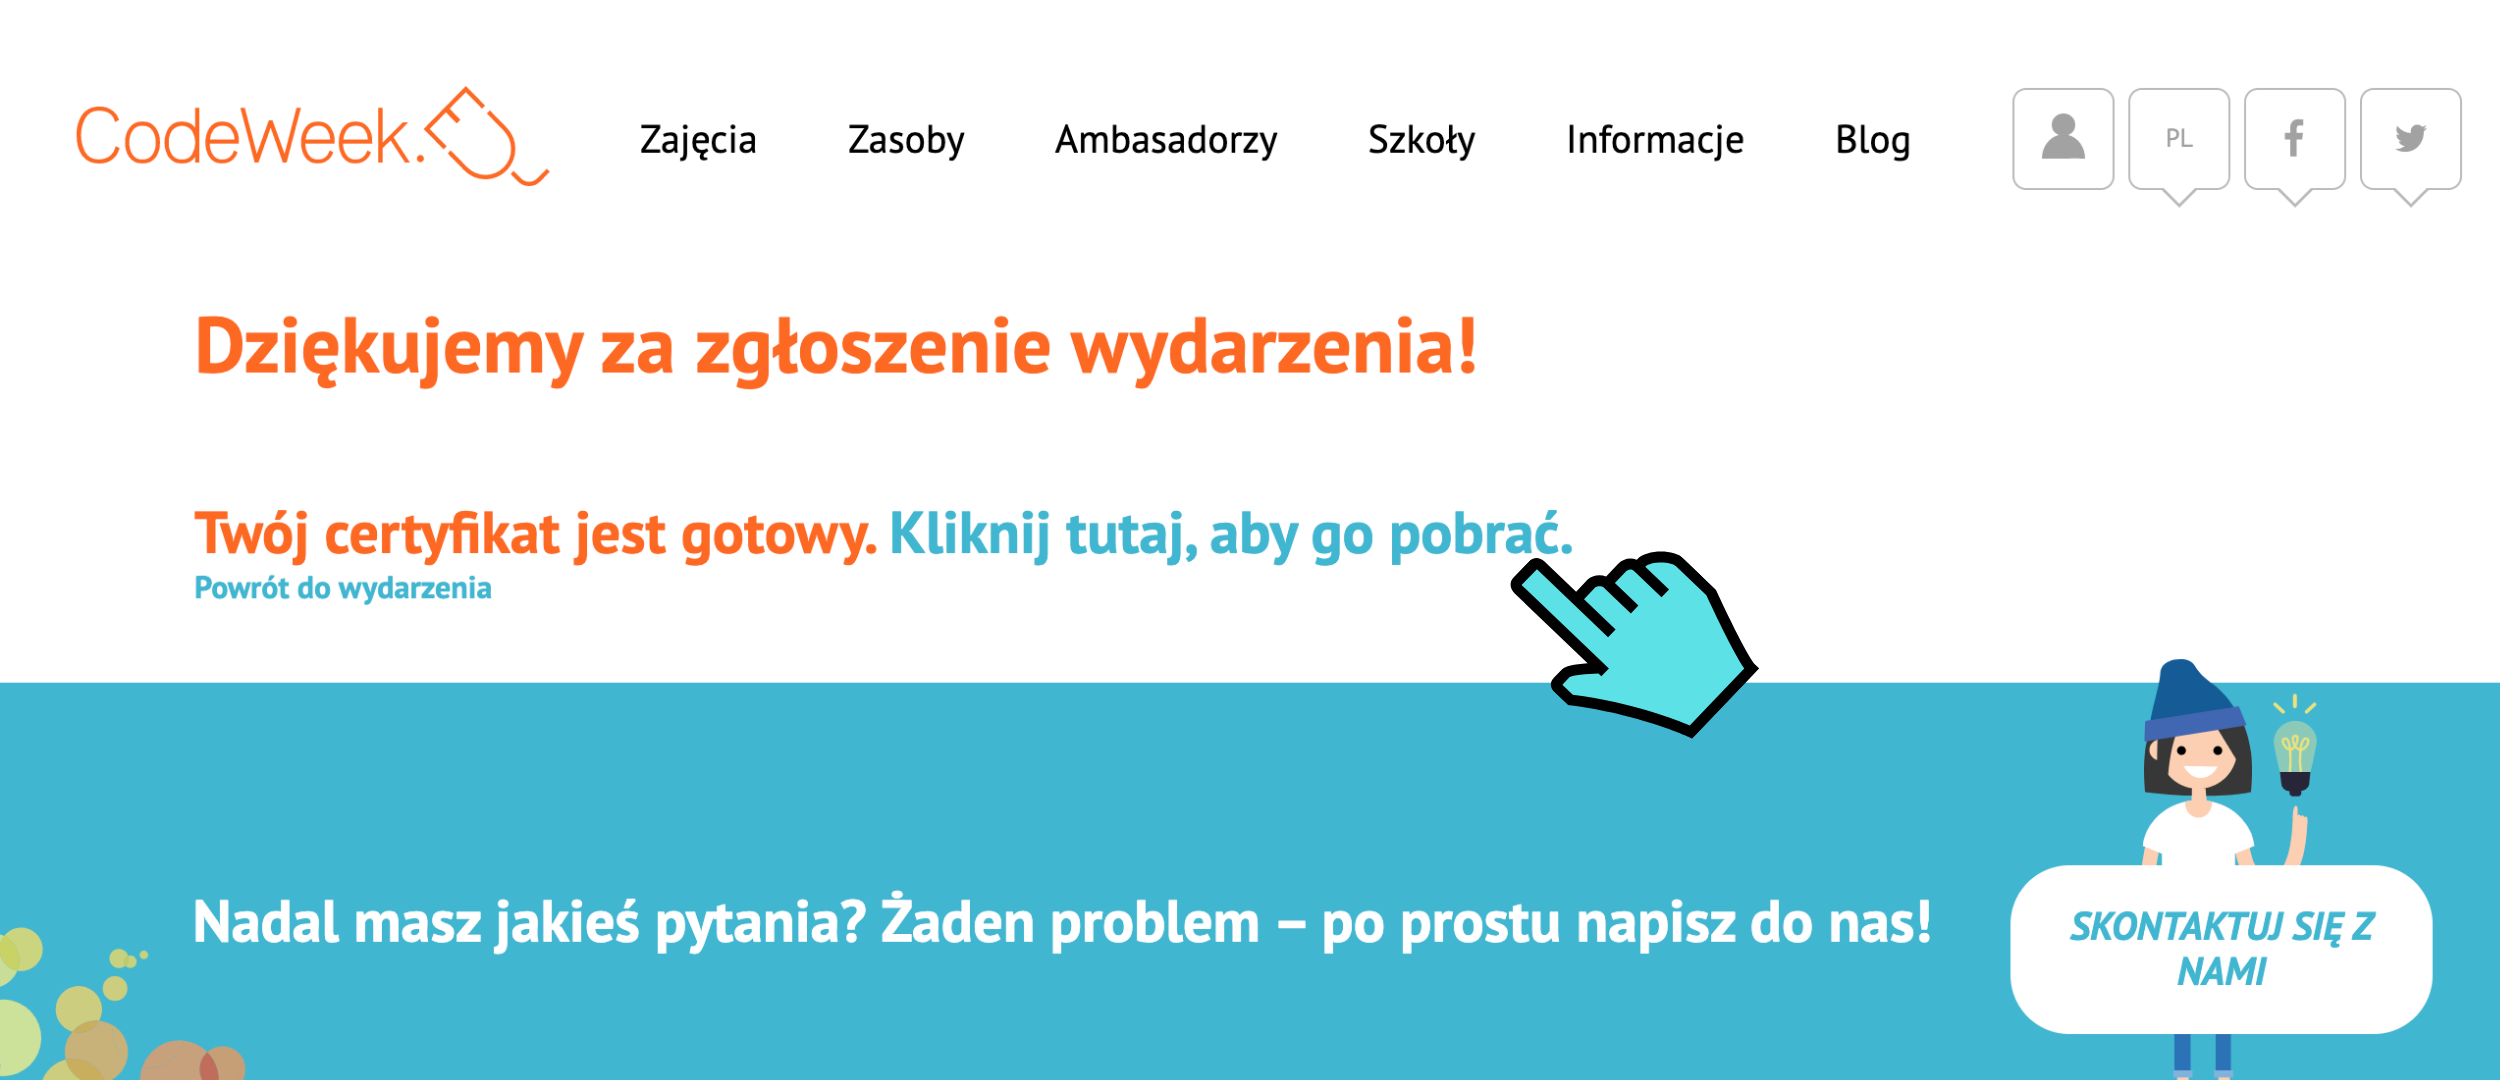 Grafika przedstawia stronę codeweek.eu po kliknięciu przycisku “Prześlij zgłoszenie wydarzenia. Na ekranie wyświetlony jest komunikat: “Dziękujemy za zgłoszenie wydarzenia! Twój certyfikat jest gotowy. Kliknij tutaj, aby go pobrać”. Niebieski, animowany kursor myszy wskazuje na ten komunikat. 